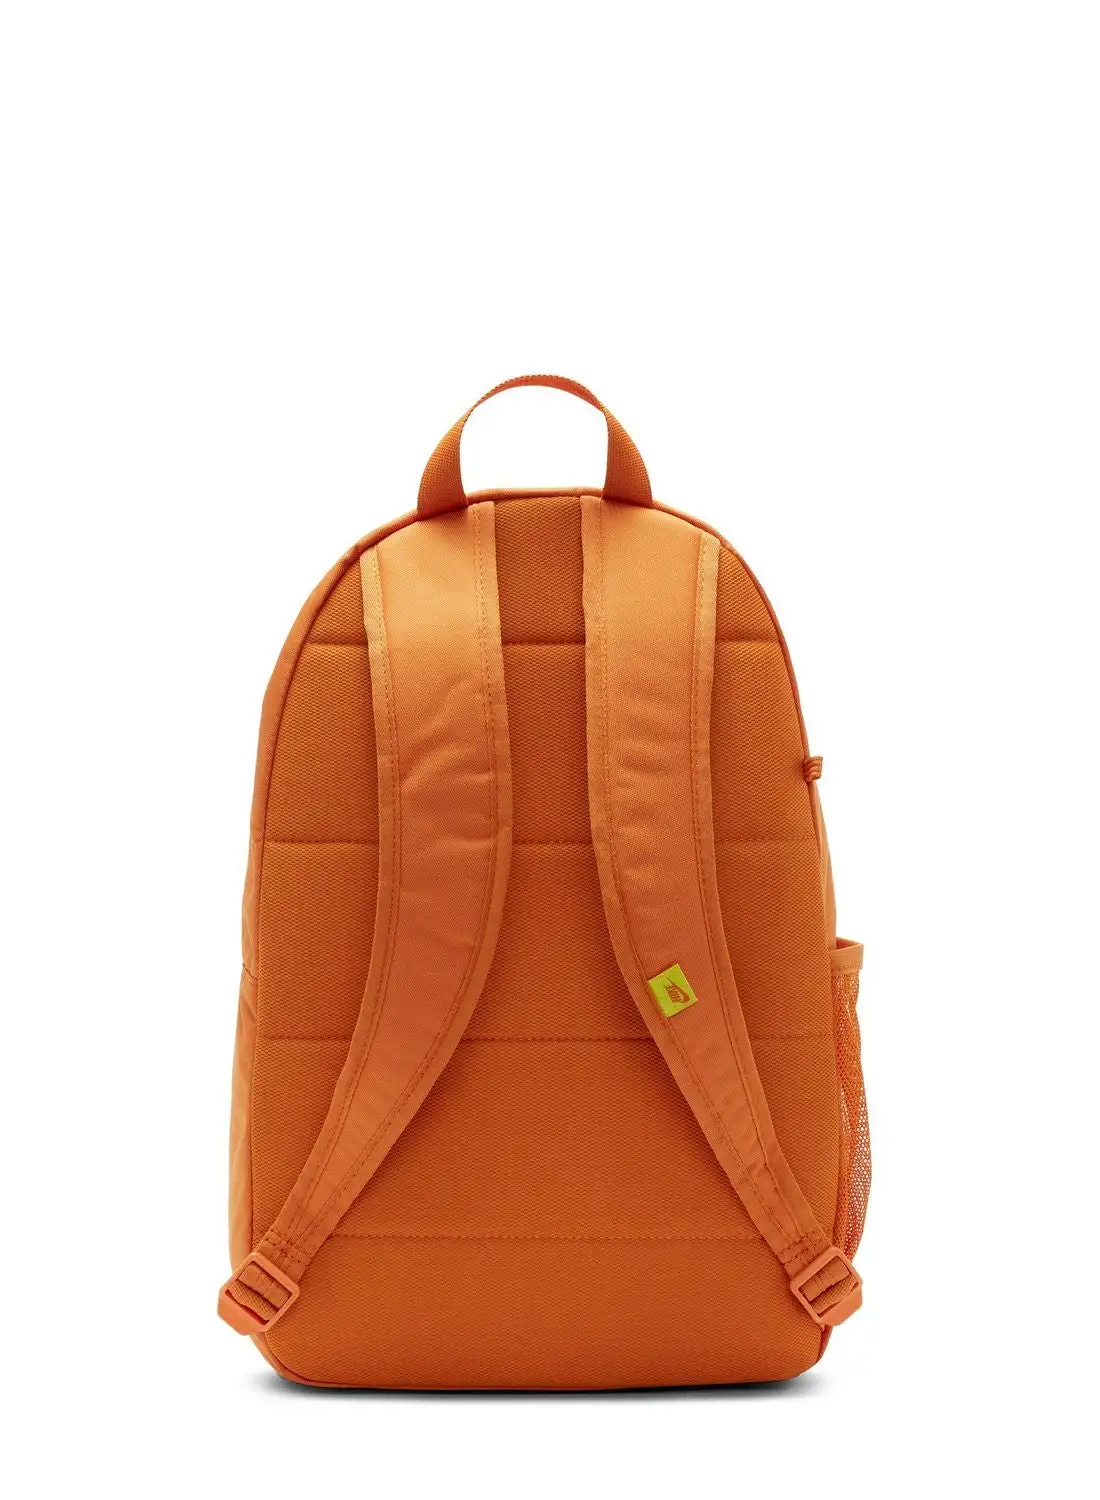 Nike Kids Elemental Backpack